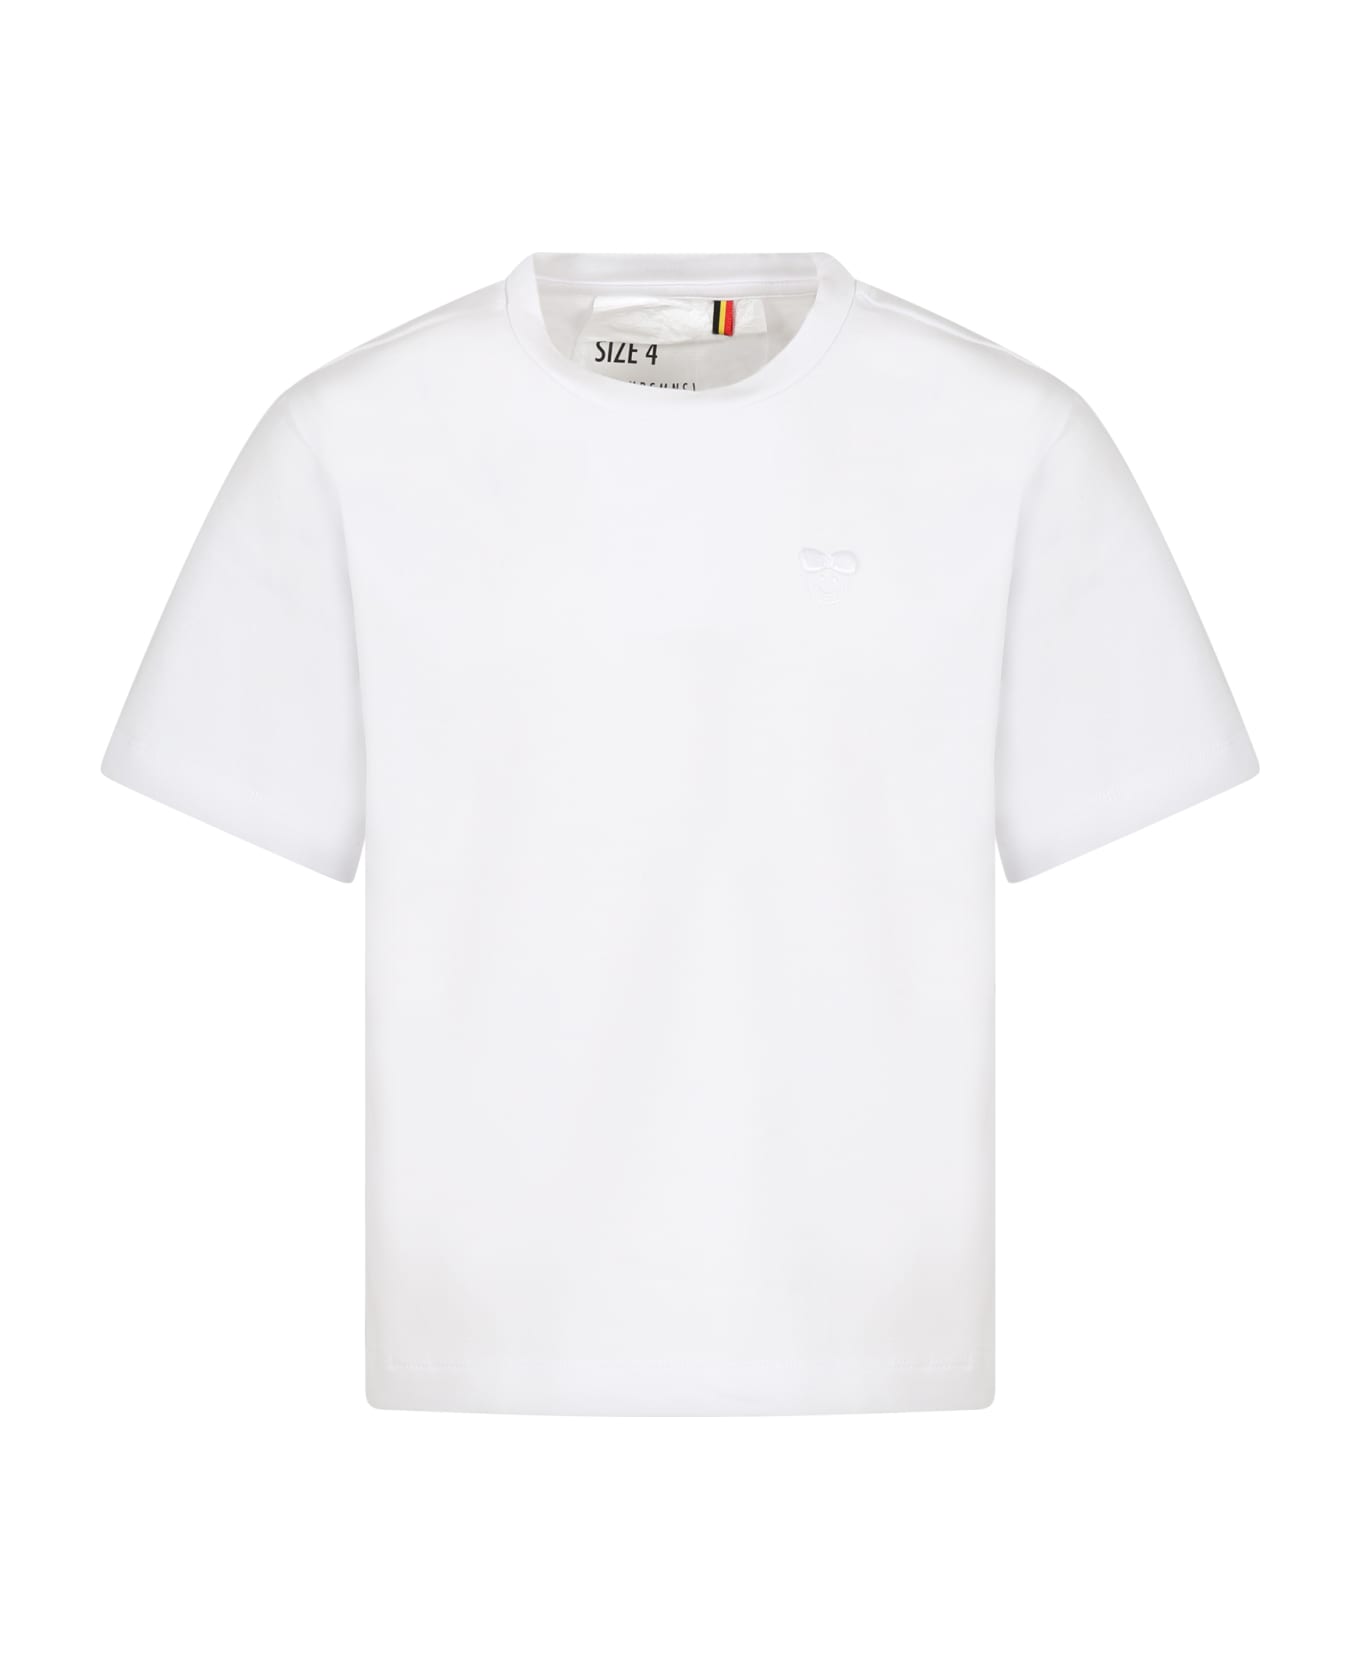 Caroline Bosmans White T-shirt For Girl With Logo - White